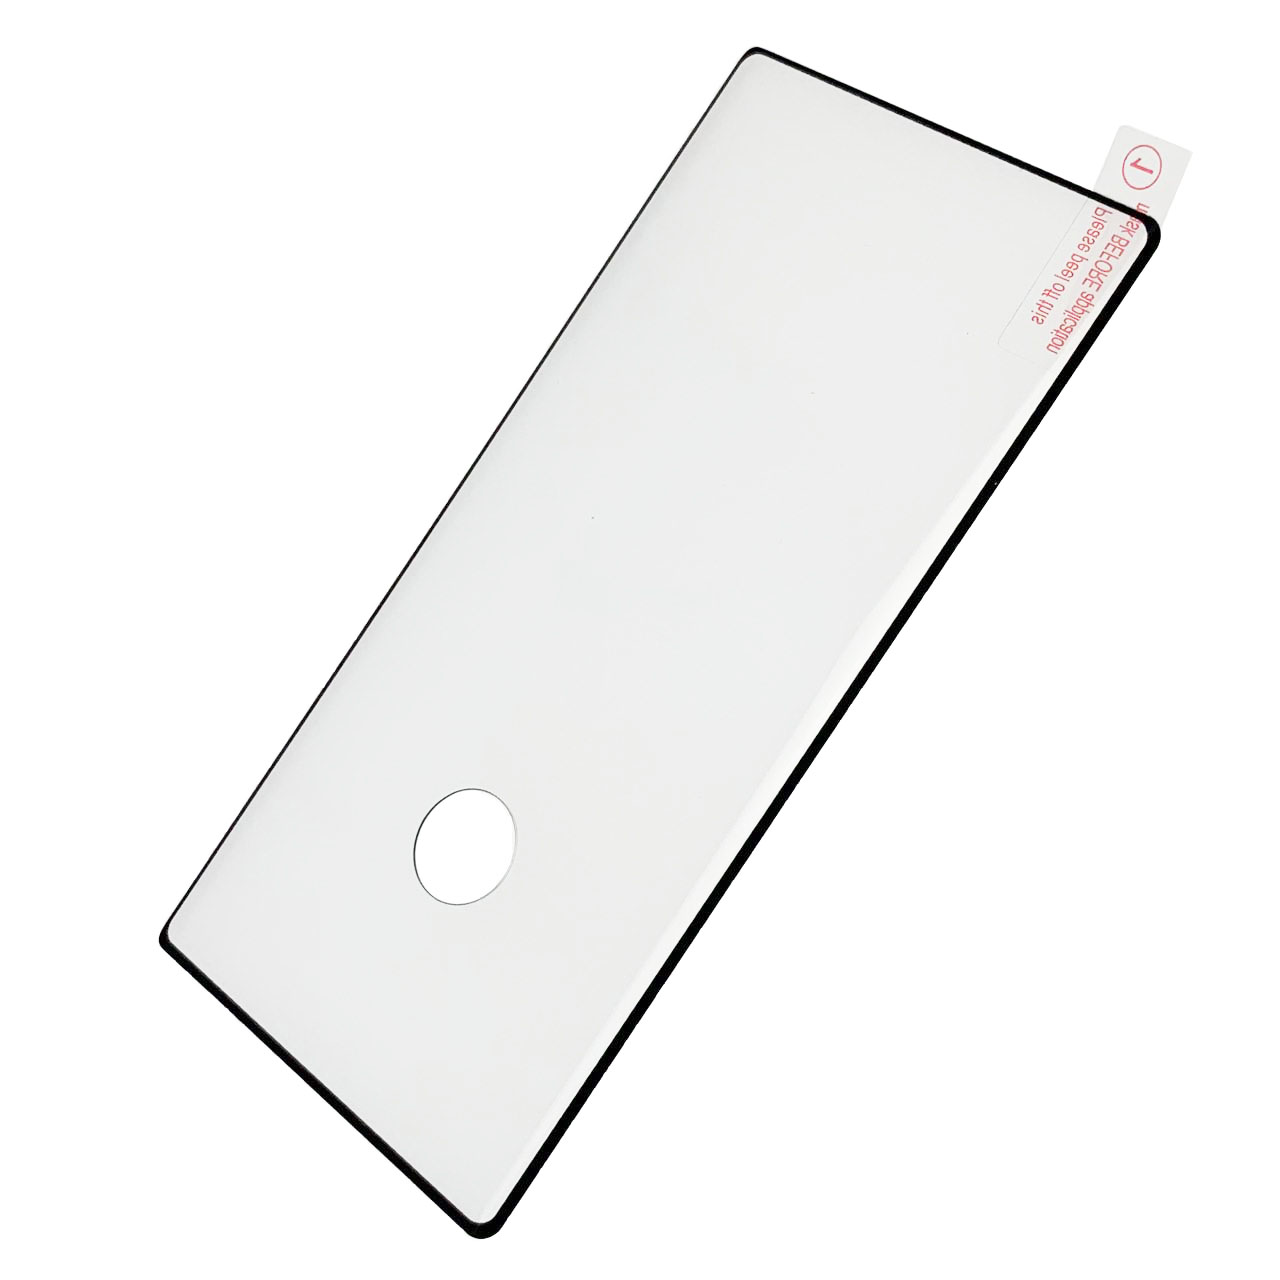 Защитное стекло B12 FULL GLUE для SAMSUNG Galaxy Note 10 (SM-N970), полная проклейка, с вырезом под отпечаток пальца, цвет окантовки черный.